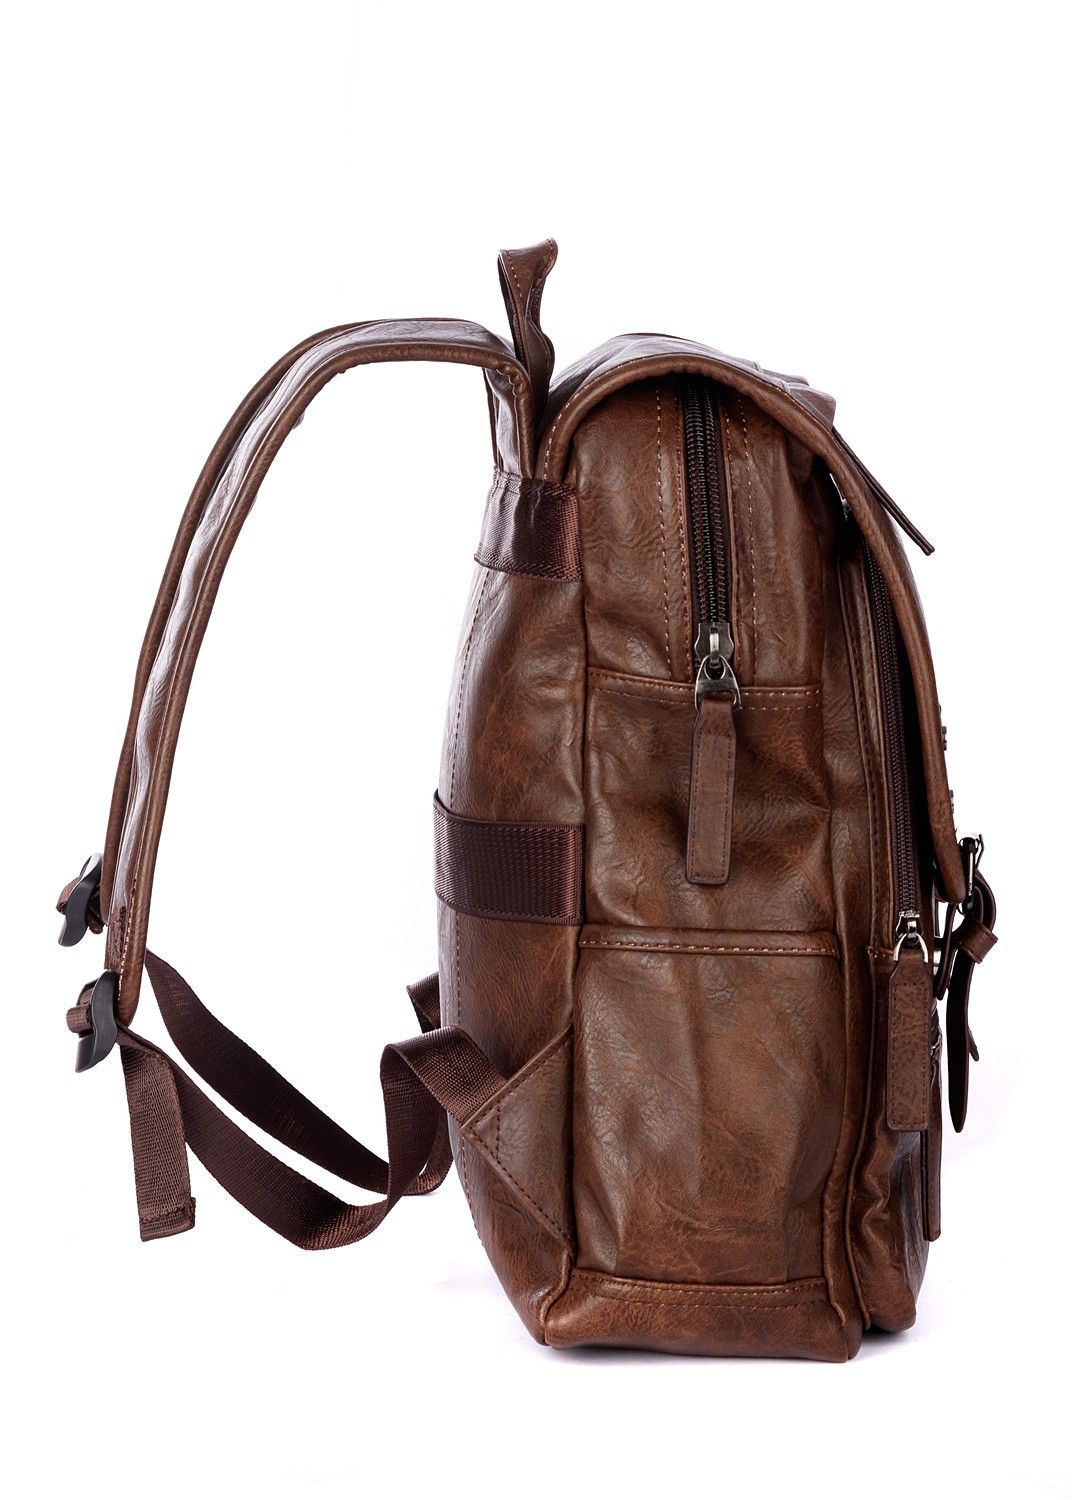 Рюкзак мужской / женский городской из искусственной кожи, коричневый, с широкими лямками, объем 14л